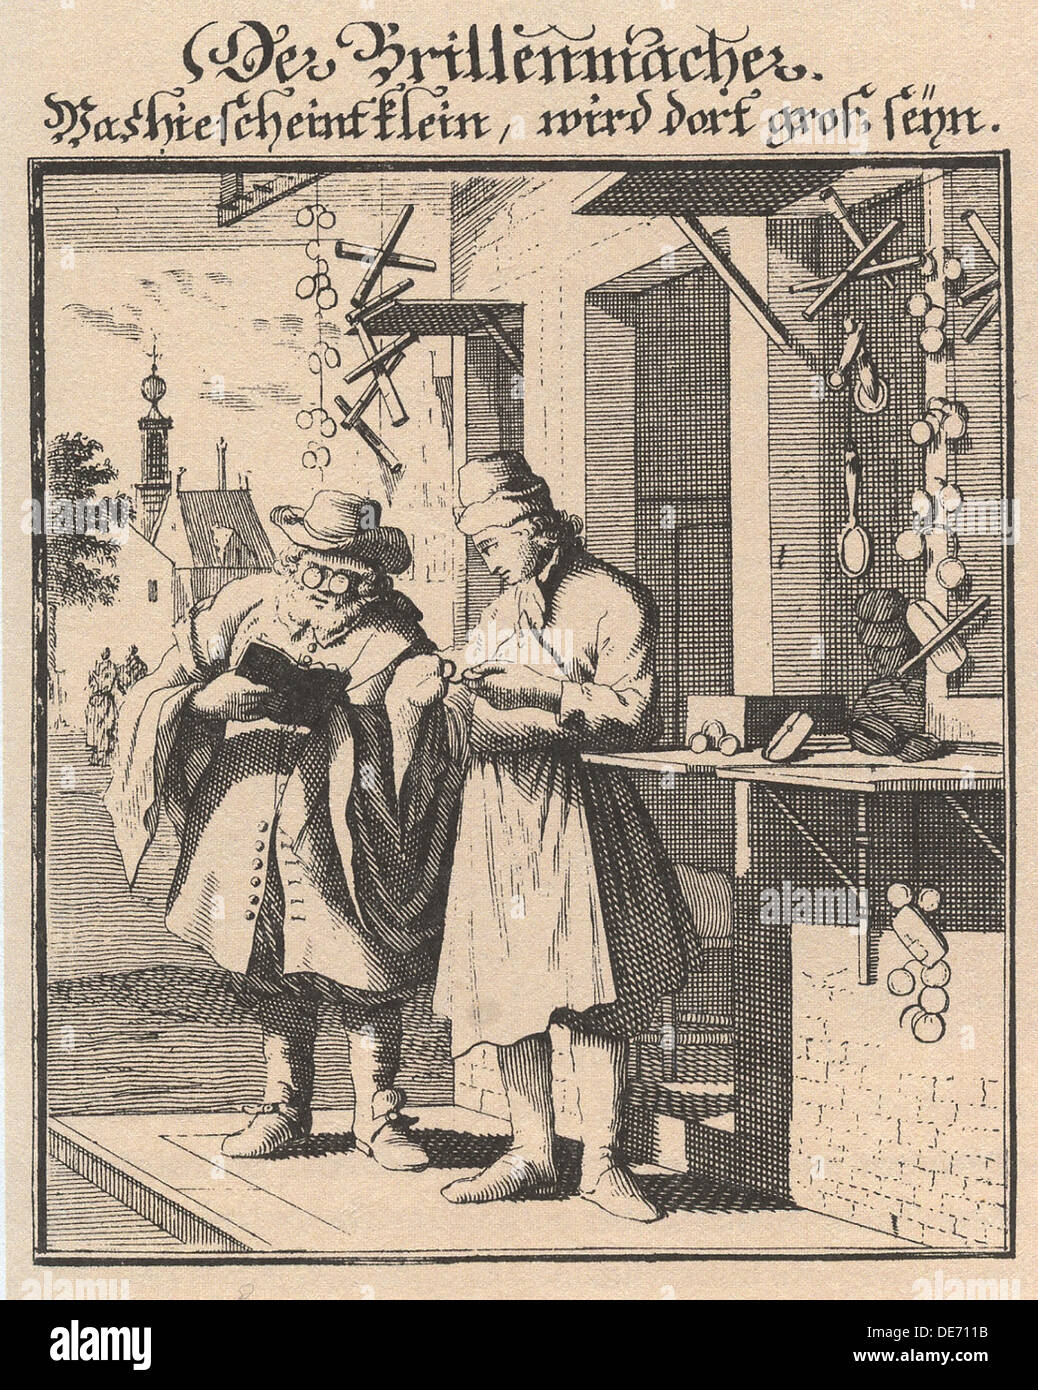 Spectacle Maker (From Abbildung der gemein-nützlichen Haupt-Stände), 1698. Artist: Weigel, Christoph, the Elder (1654-1725) Stock Photo